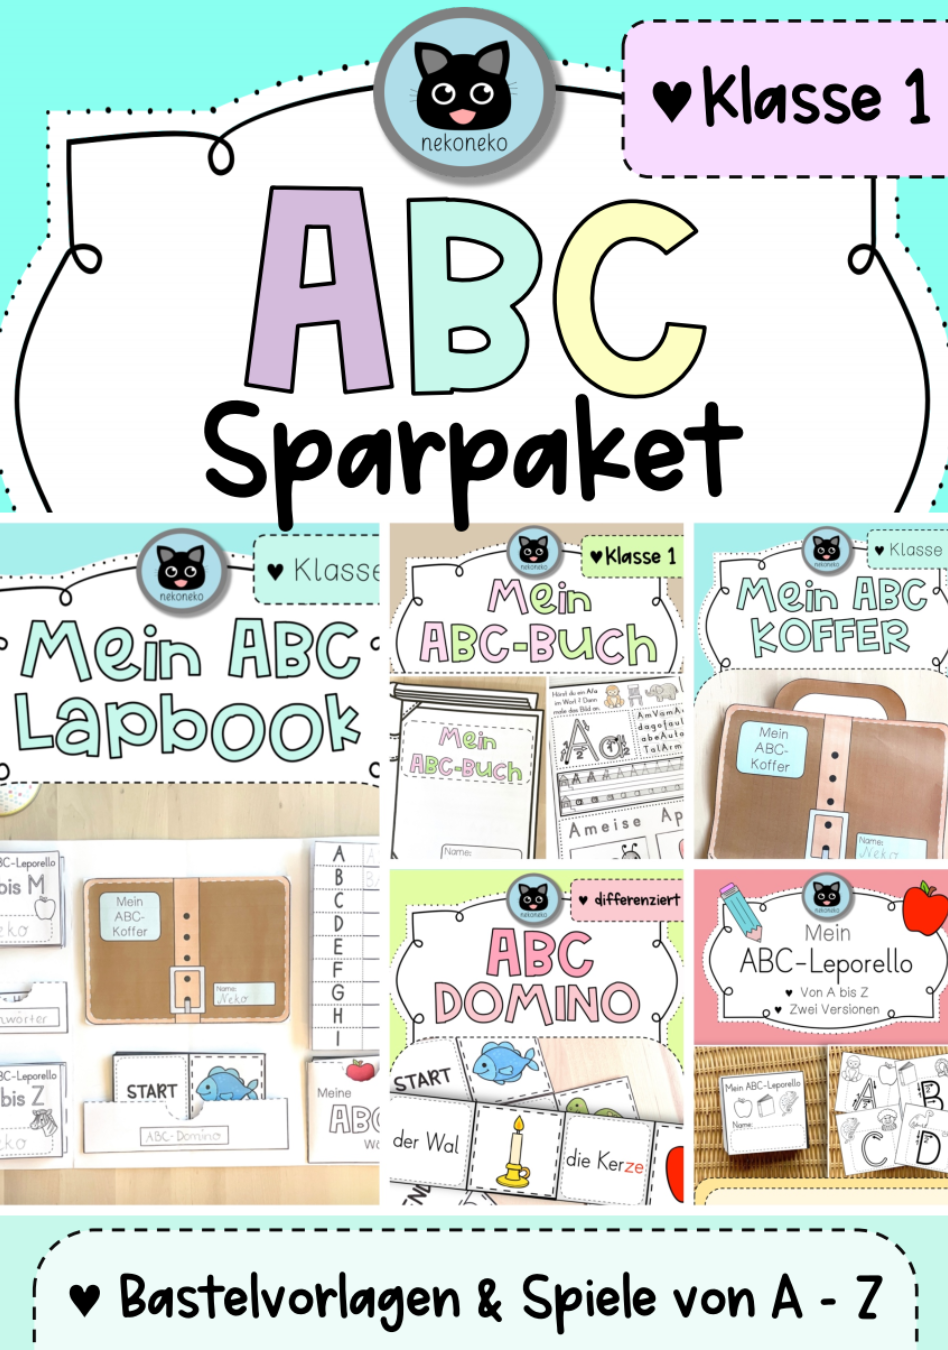 ABC Sparpaket | Bastelvorlagen und Spiele von A - Z | Klasse 1